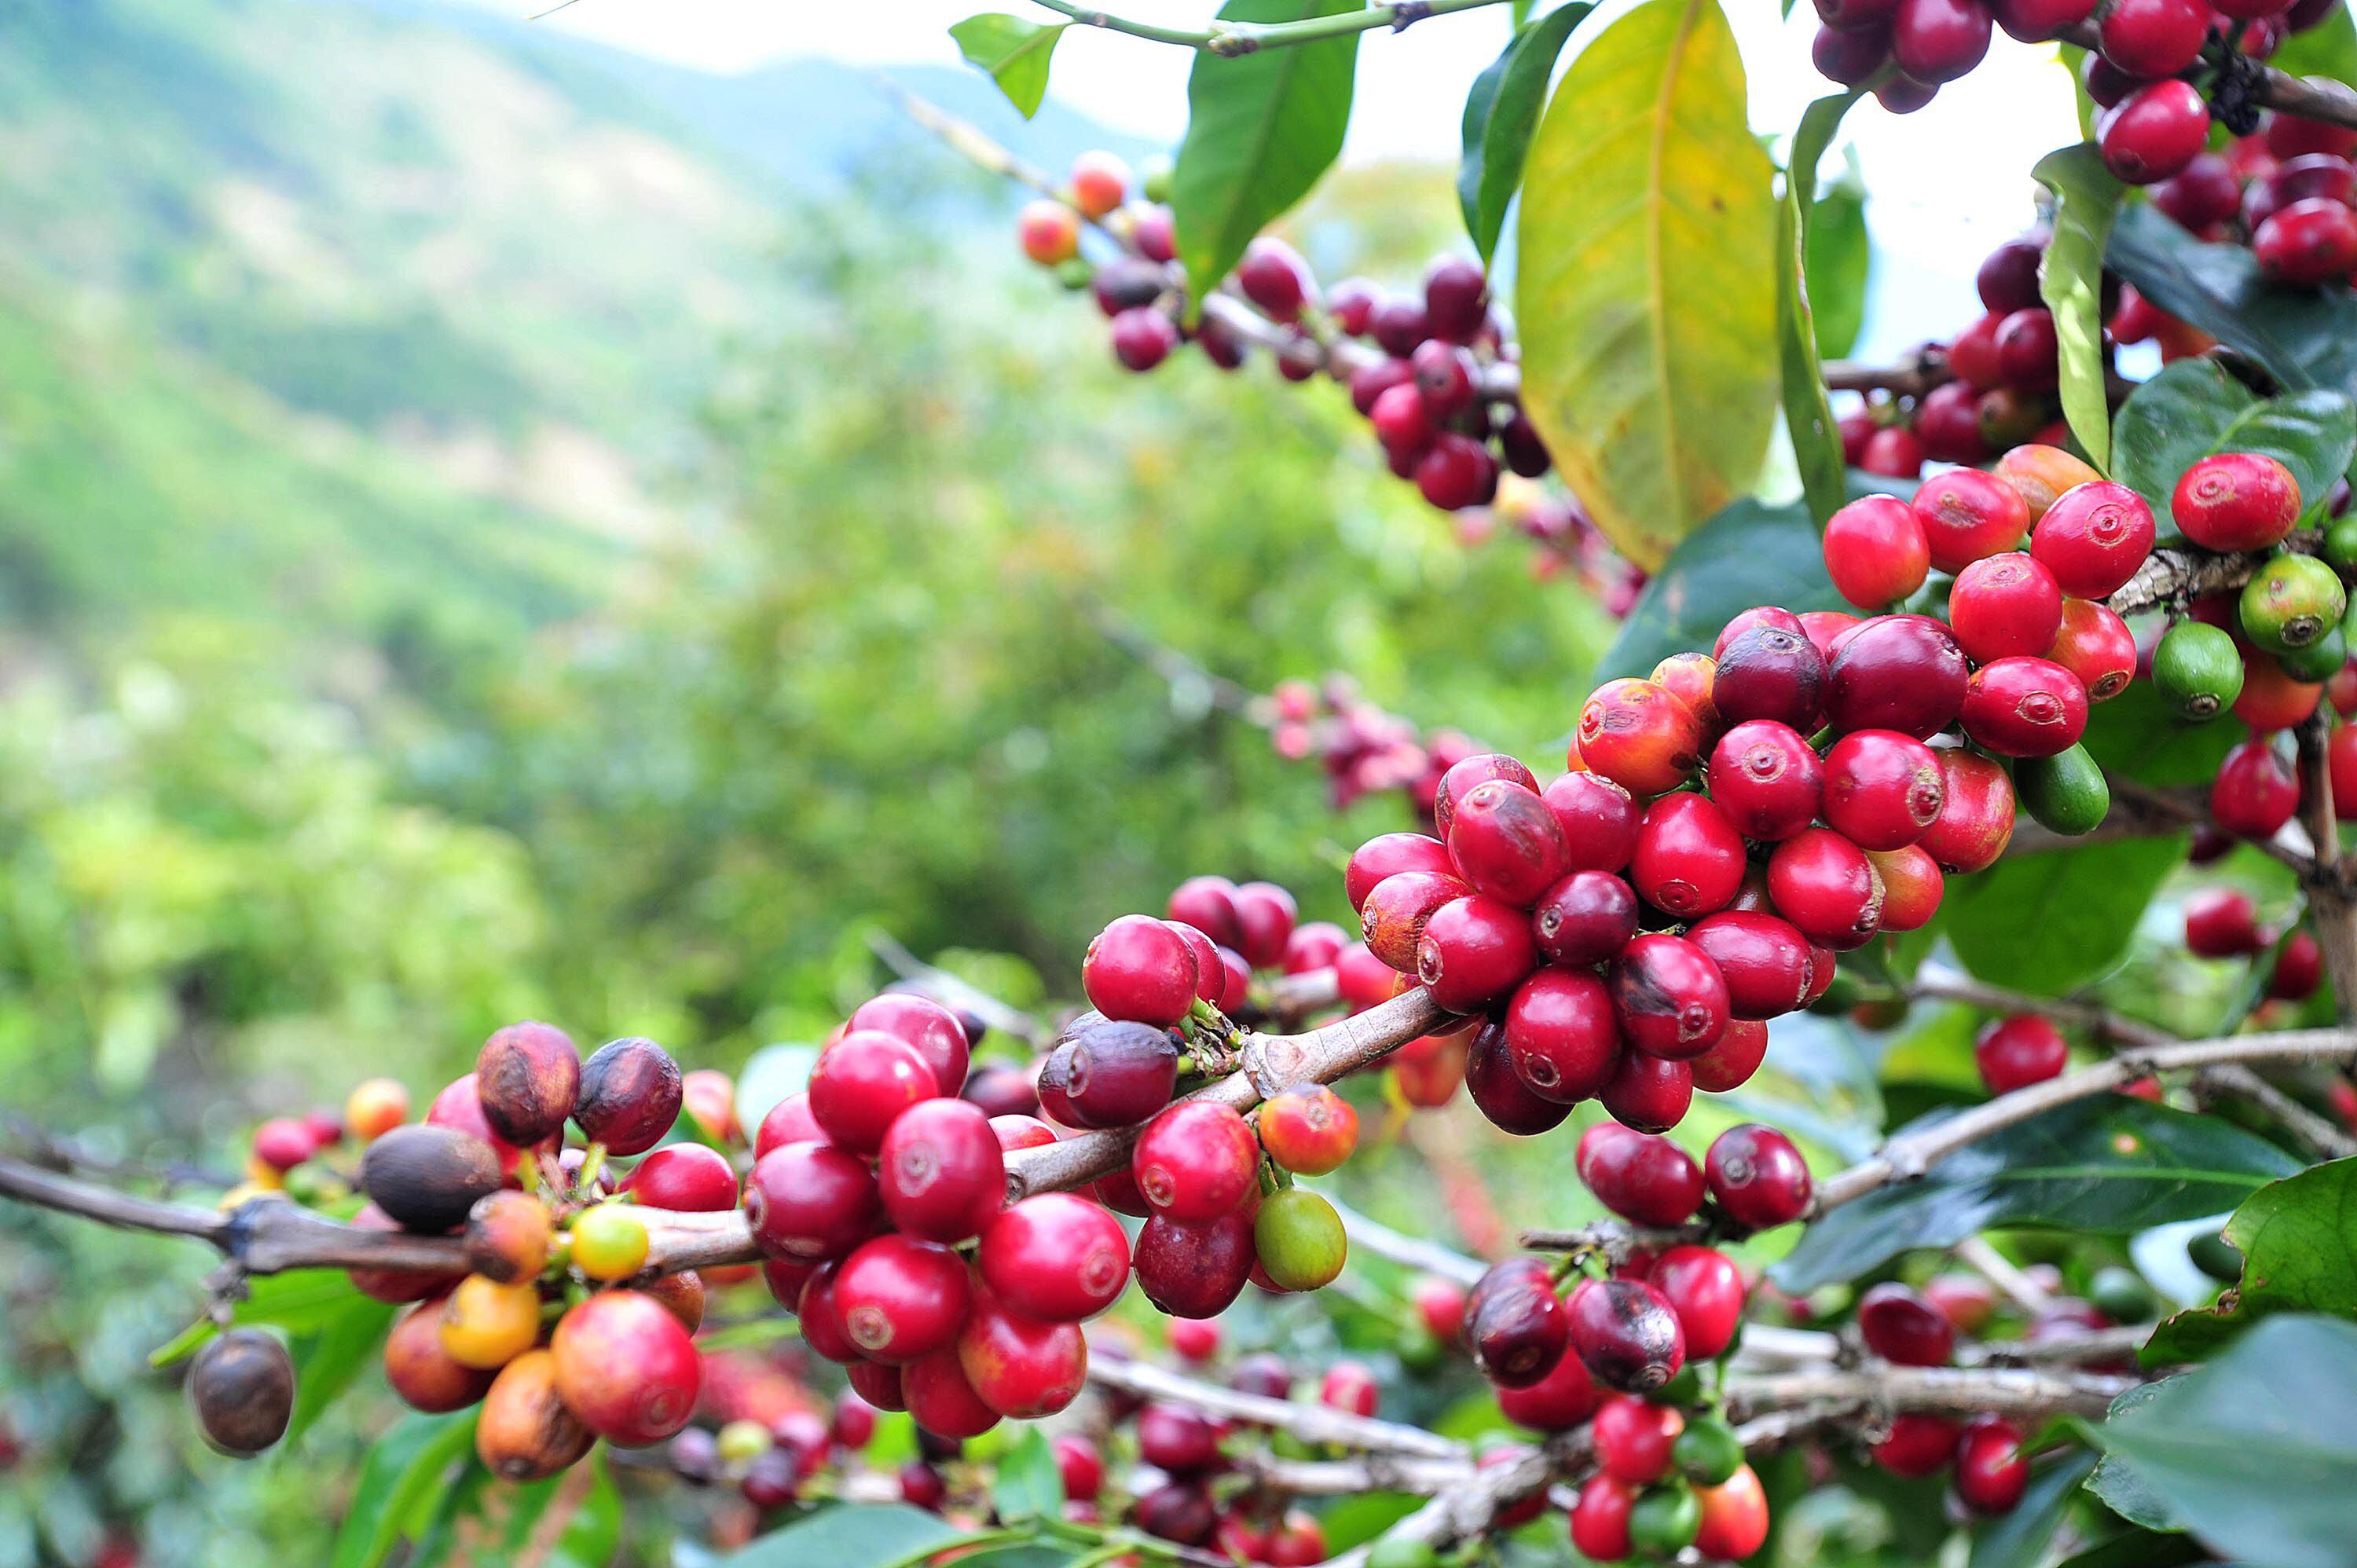 Las recientes investigaciones científicas indican que que el café arábica se formó entre 610.000 y un millón de años atrás en la región de Etiopía en África.